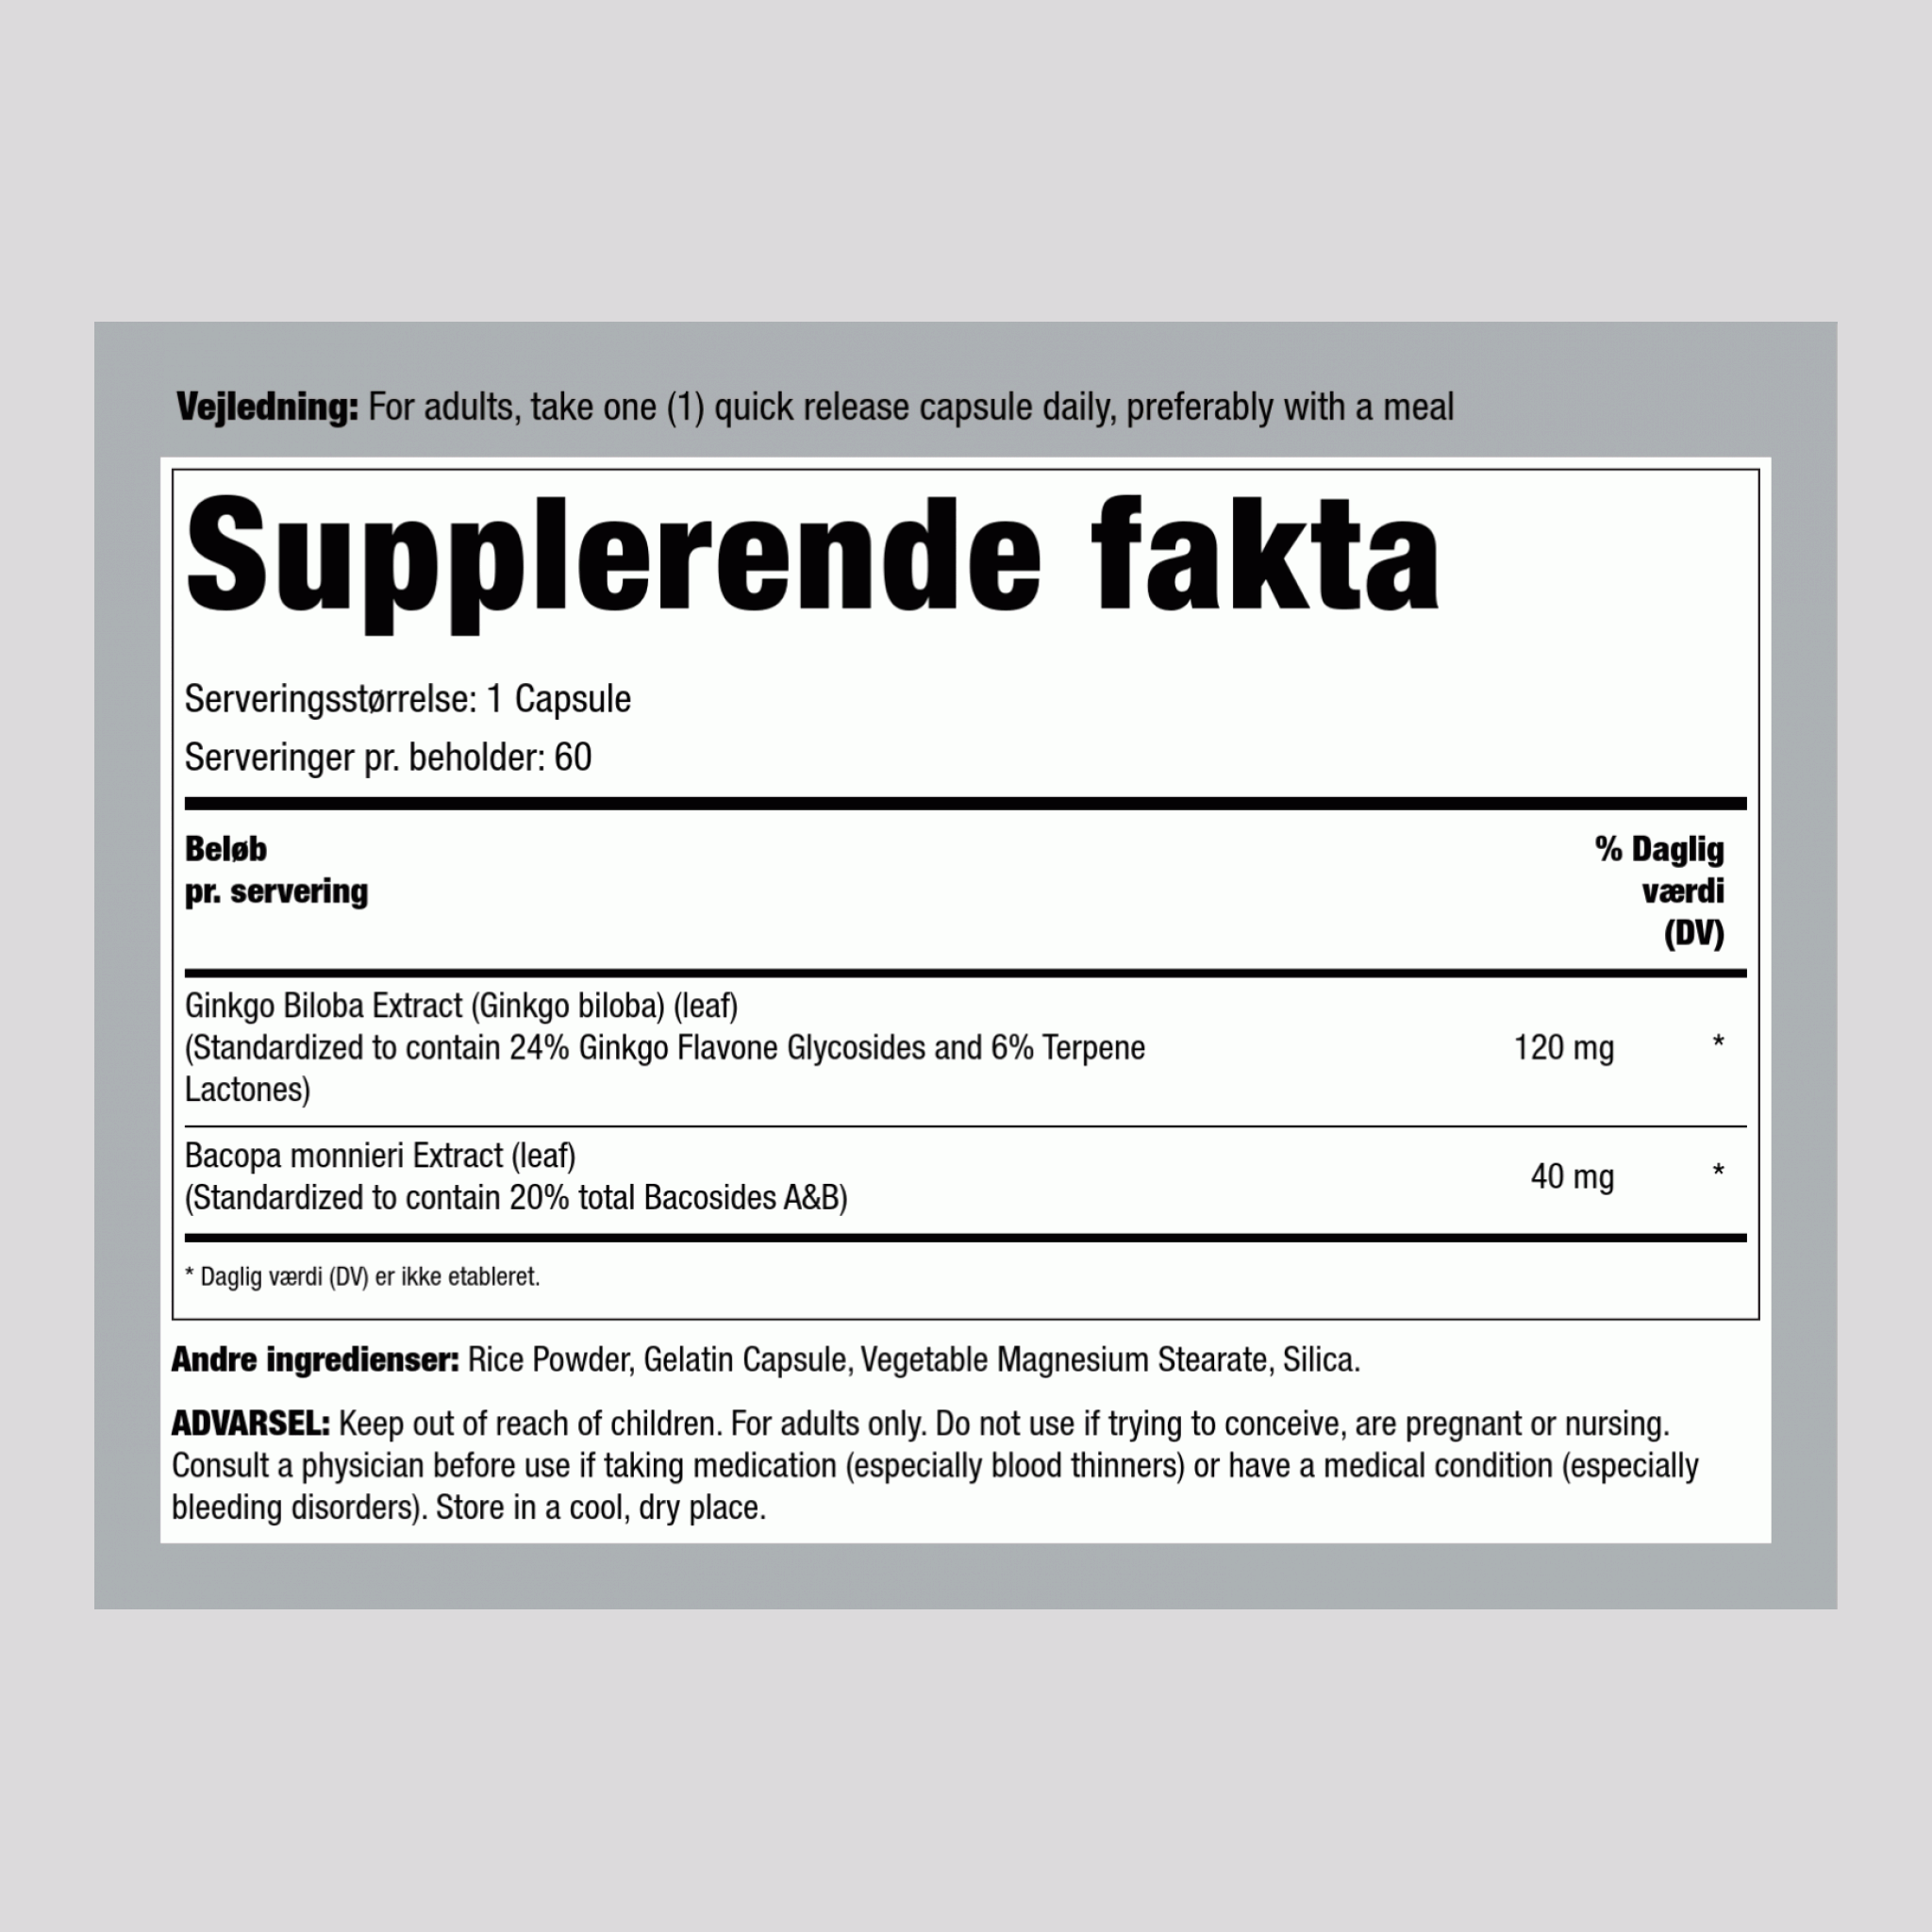 Ginkgo Biloba Standardiseret Ekstrakt 120 mg 60 Kapsler     